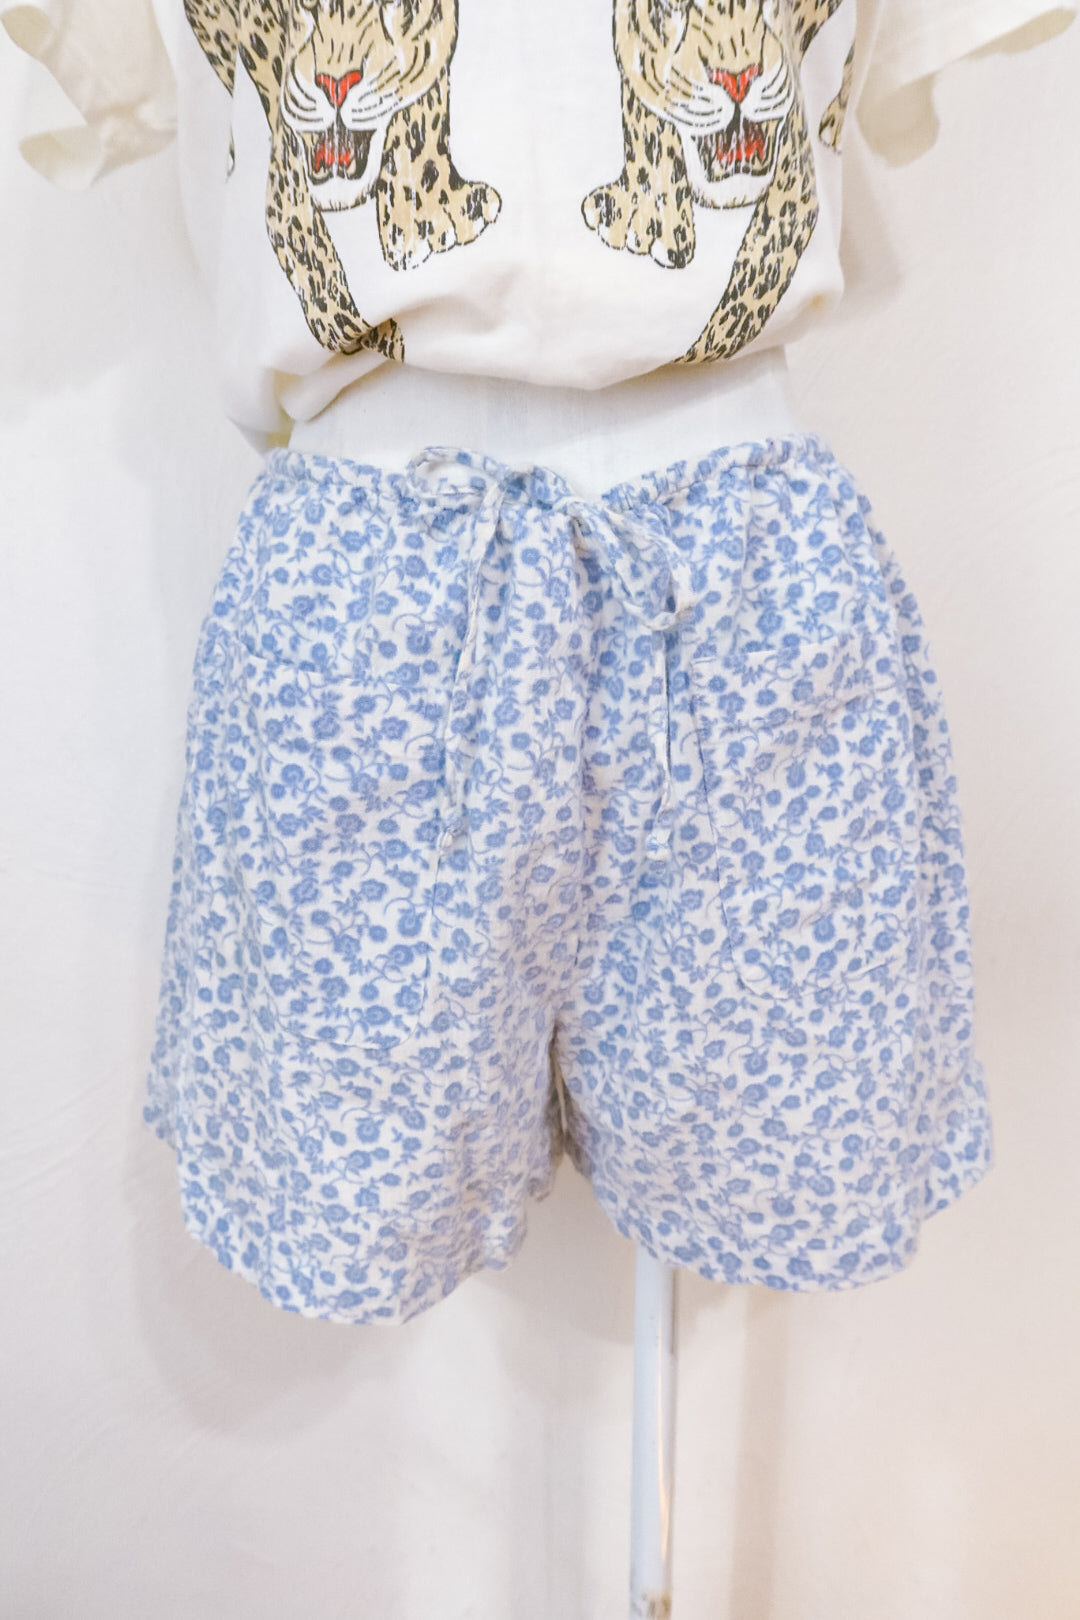 J. Crew Floral Cotton Shorts (M)